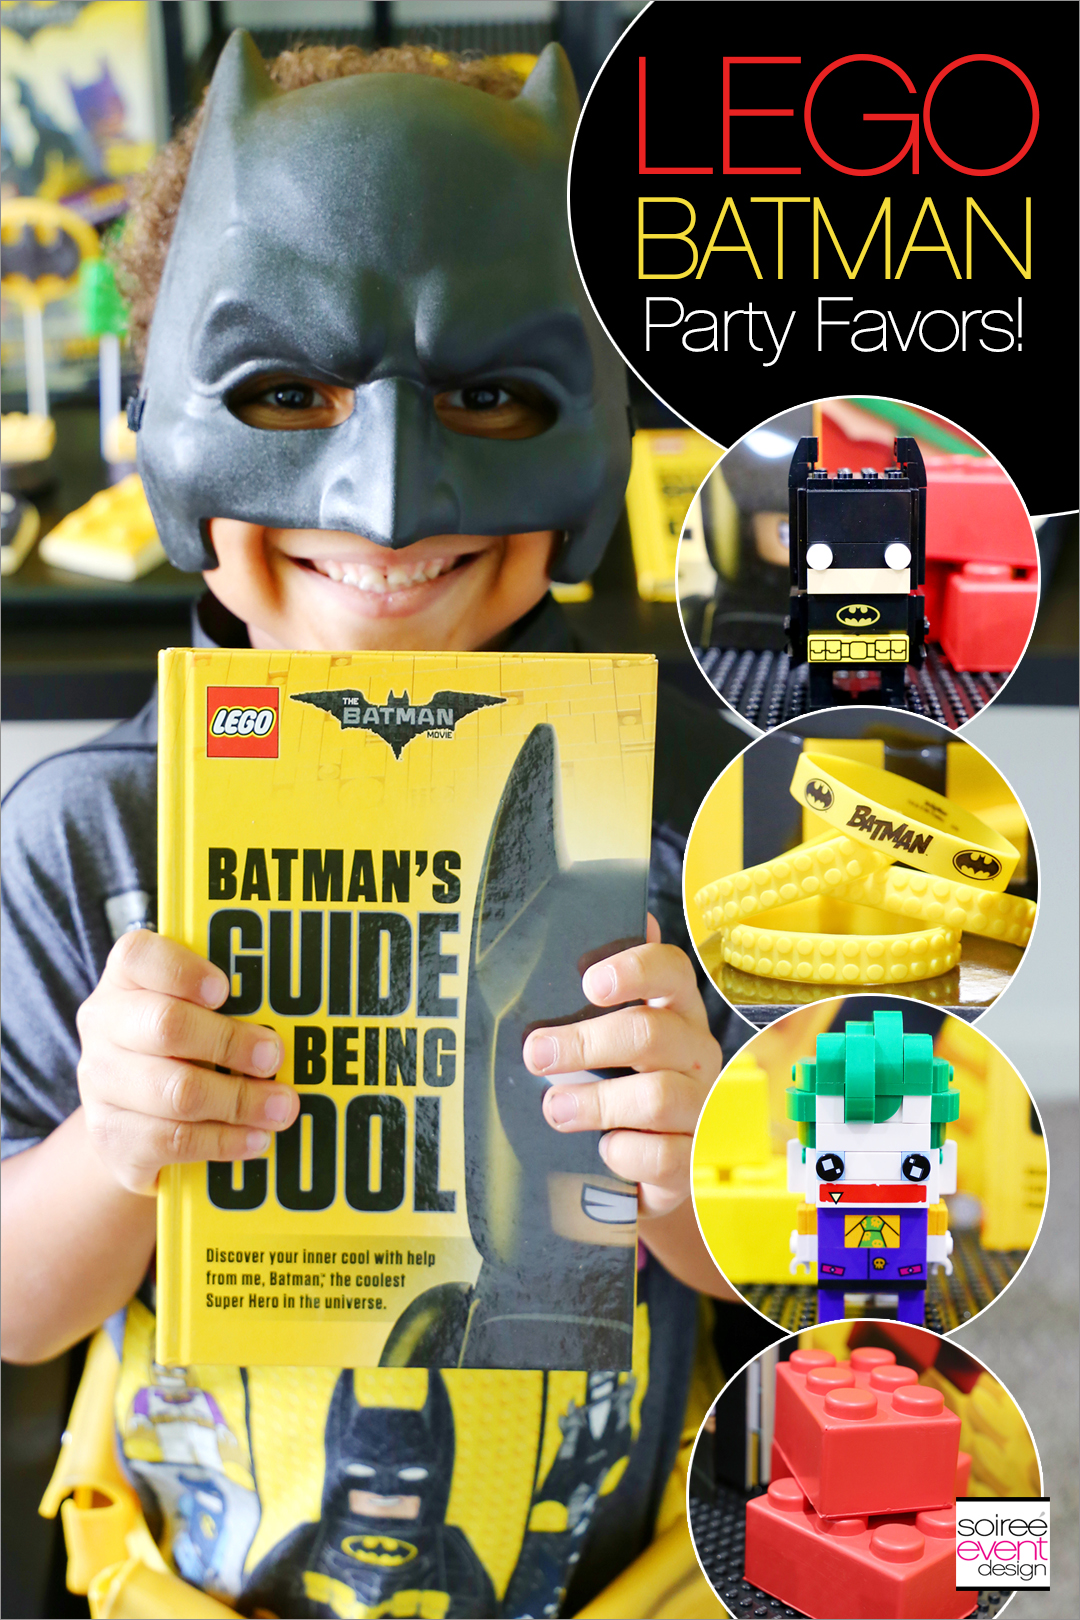 Lego Batman Party Ideas - Batman Party Favors - Soiree Event Design